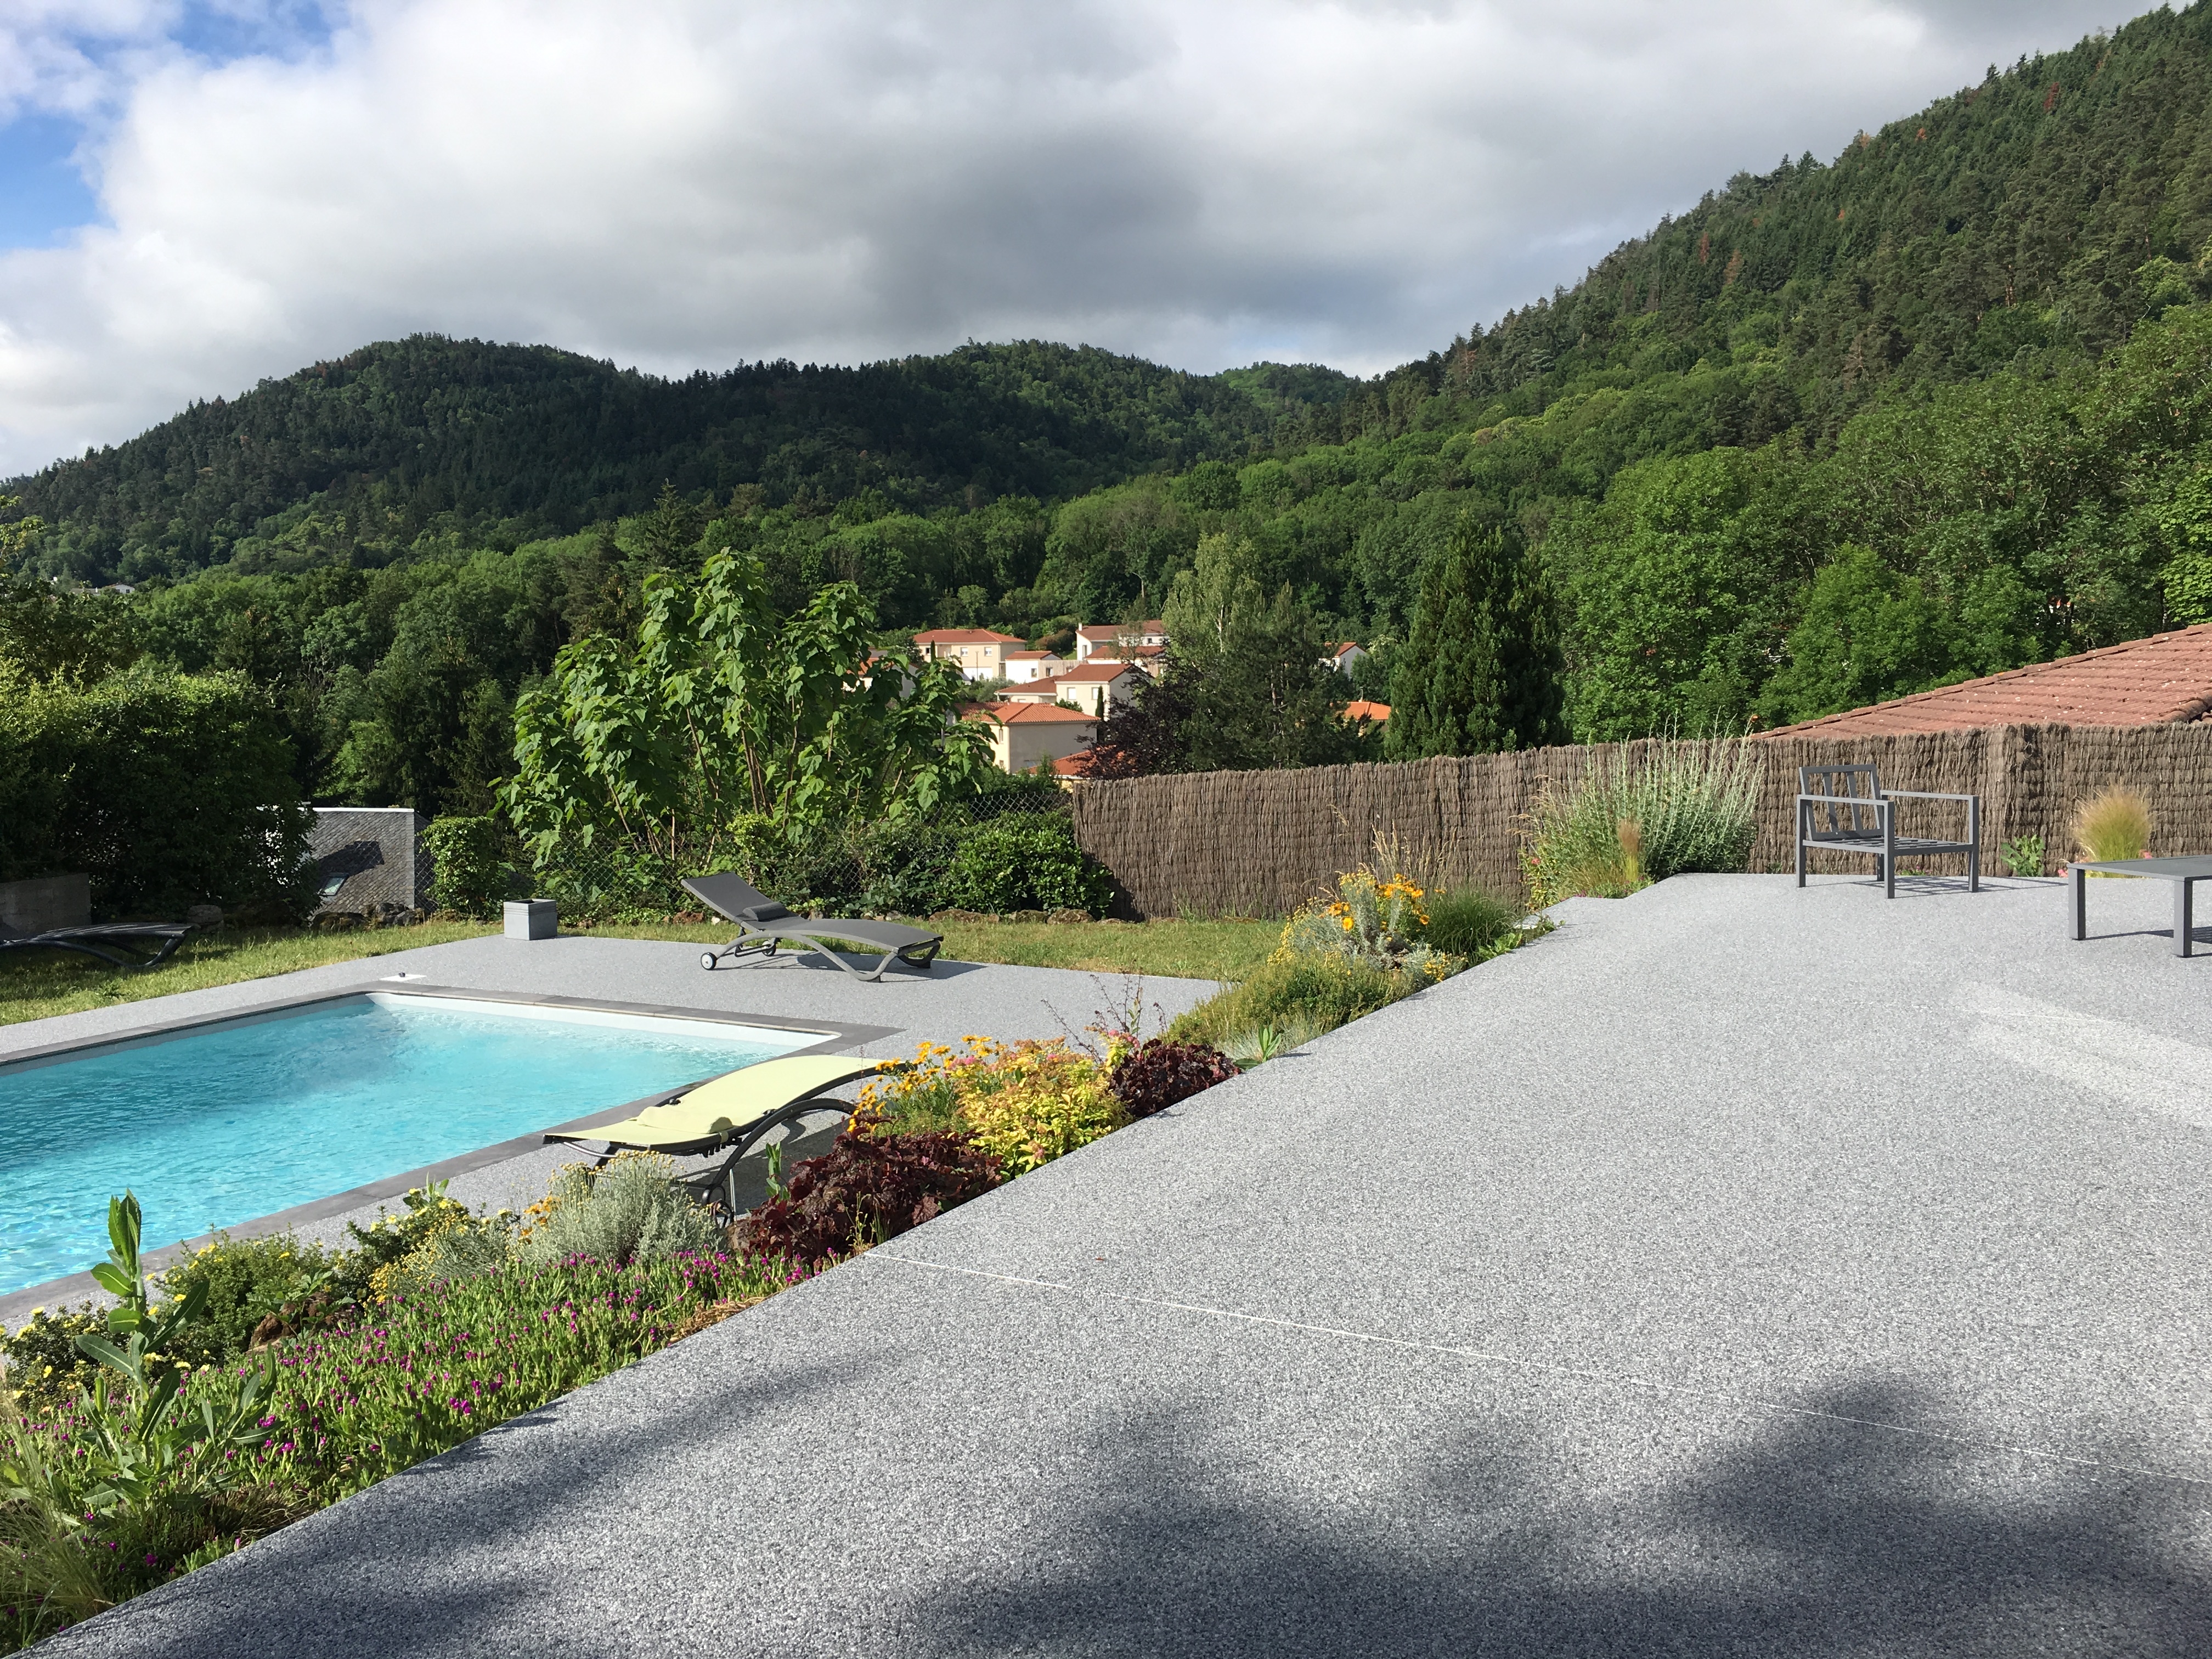 Ralisation Plage de piscine en Hydrostar et dallage - Puy-de-Dme conue le 25/07/2019